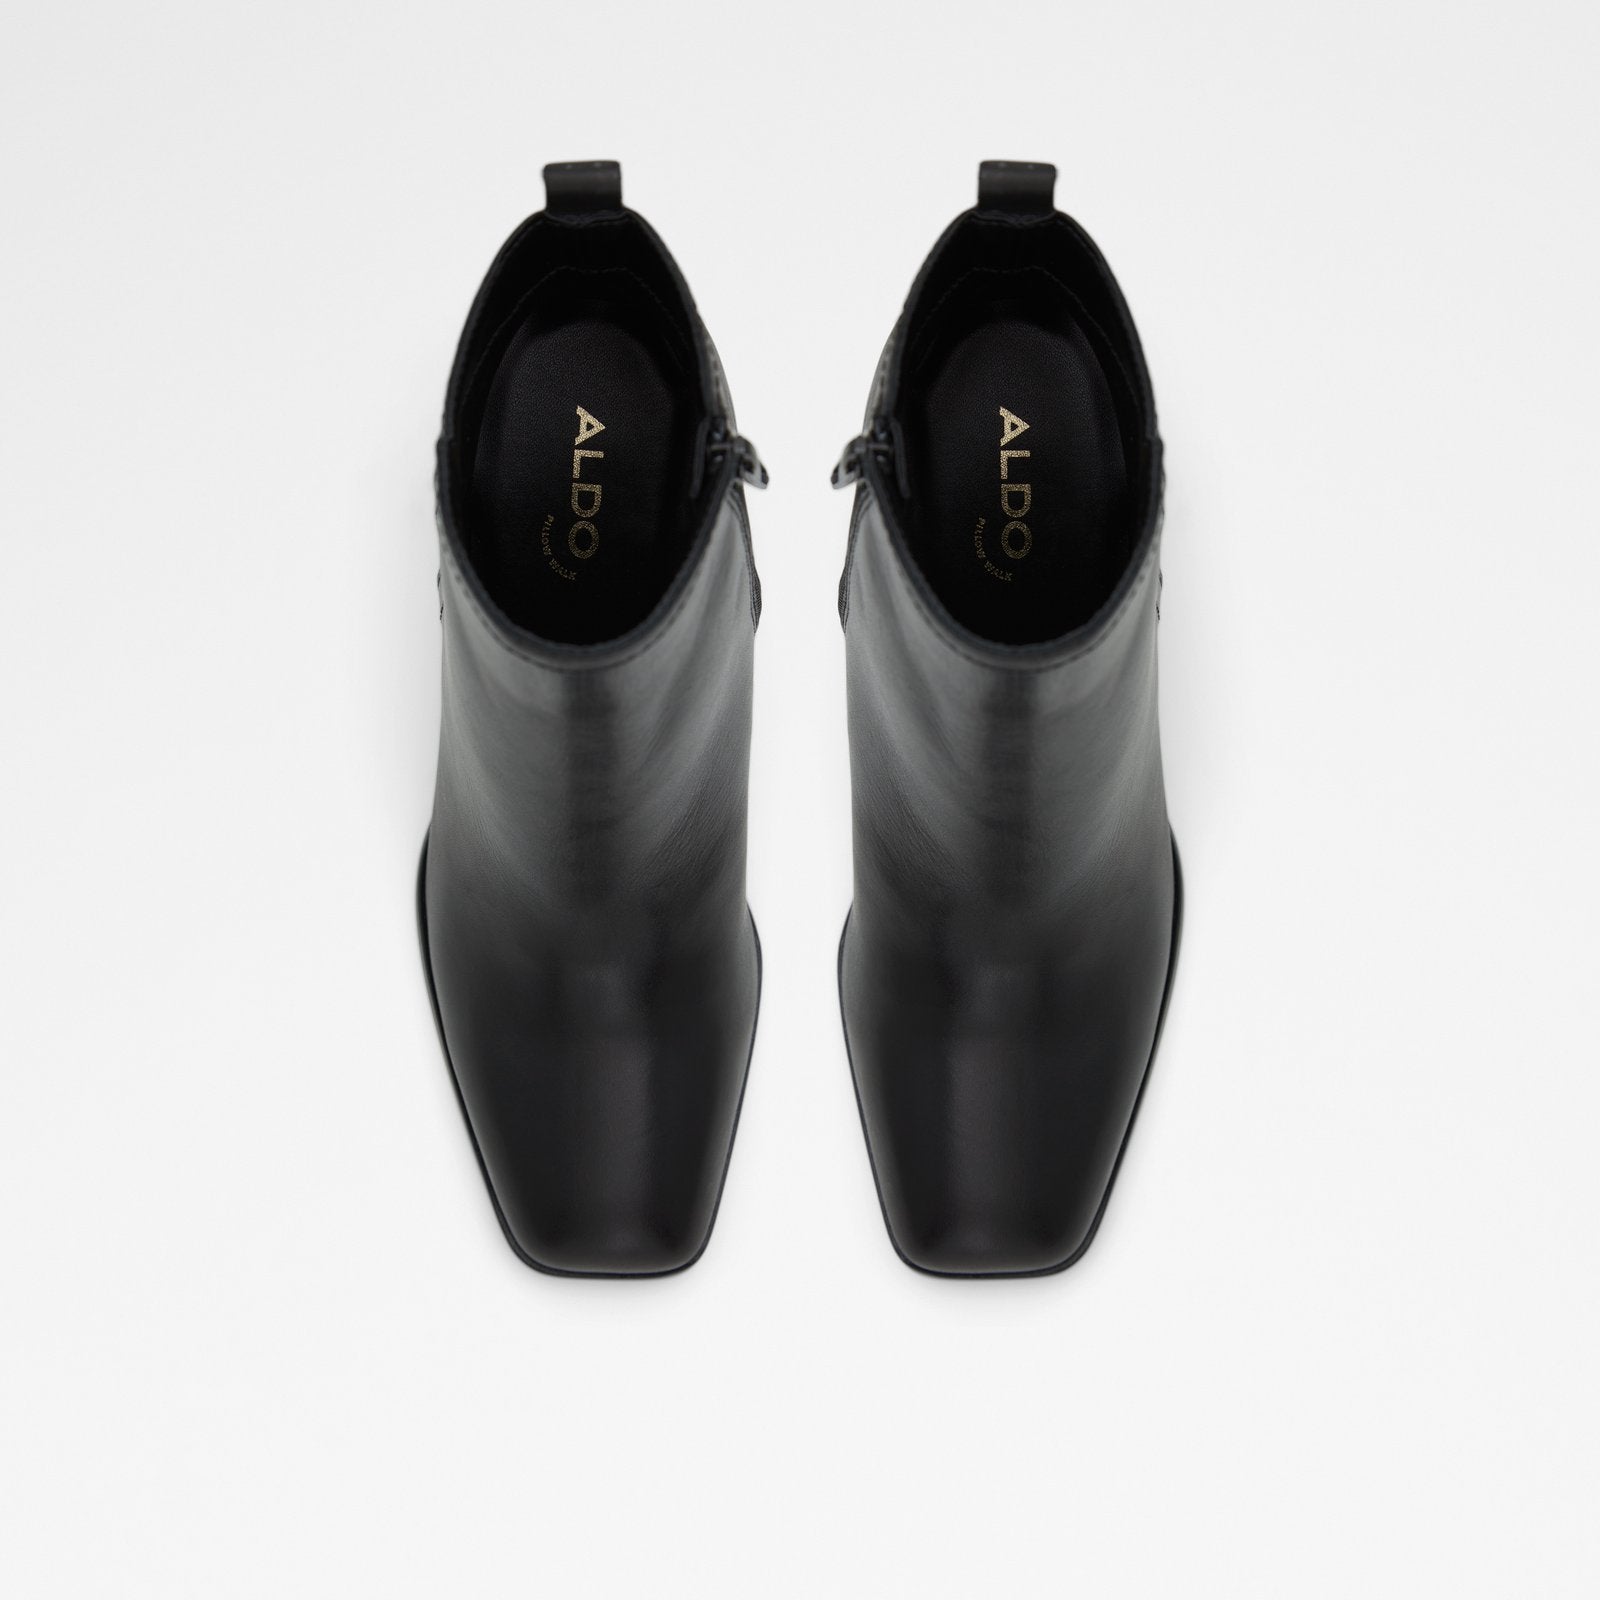 Reva Women Shoes - Black - ALDO KSA